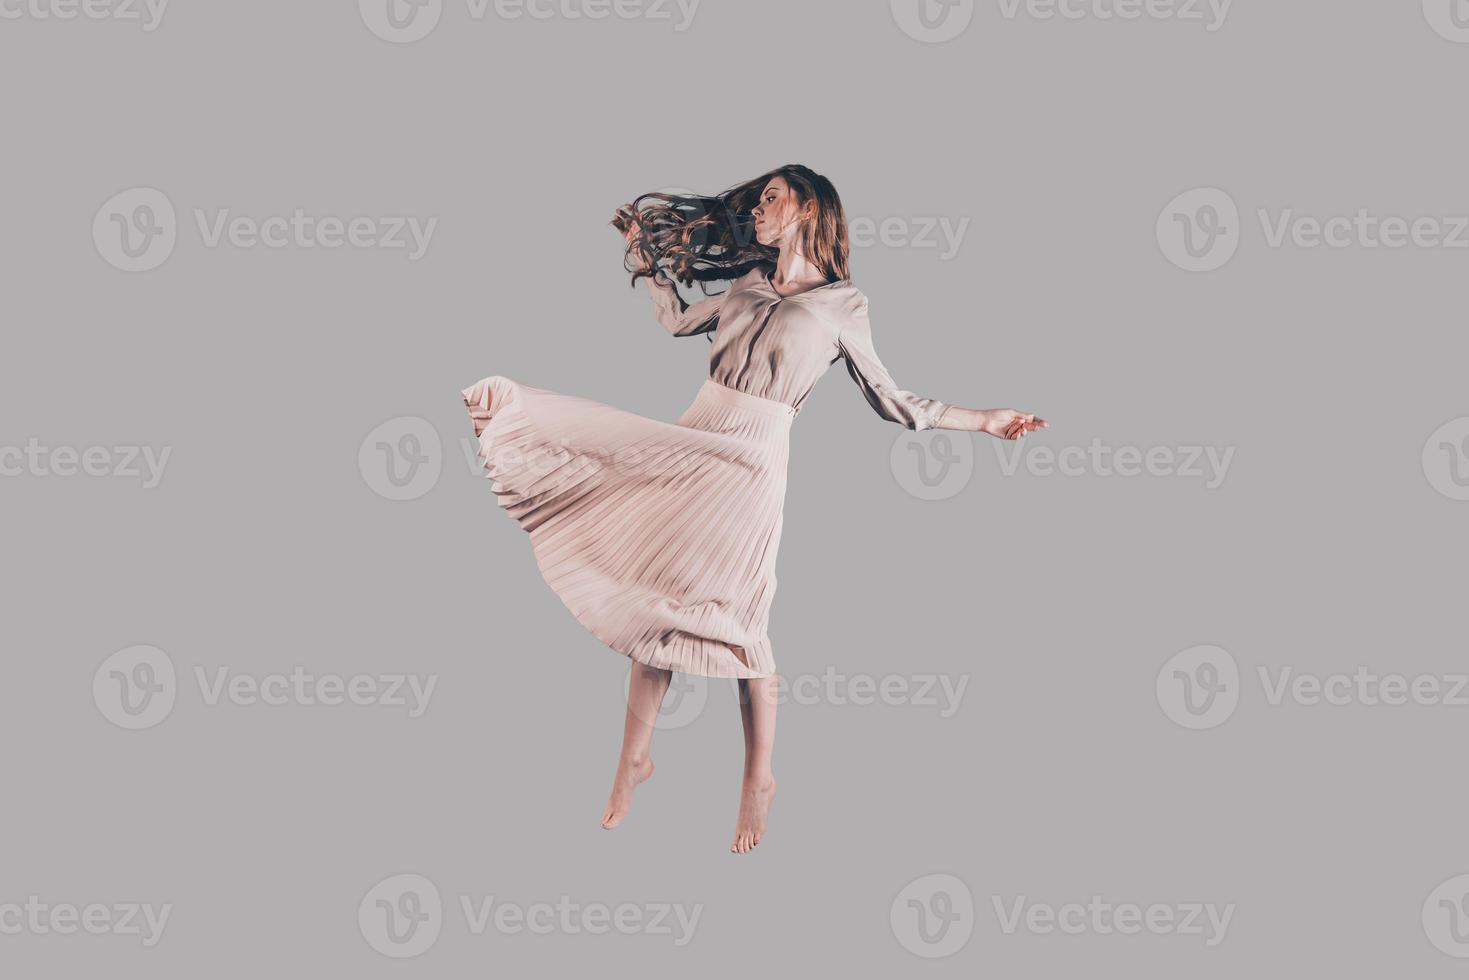 zweven schoonheid. studio schot van aantrekkelijk jong vrouw zweven in lucht foto